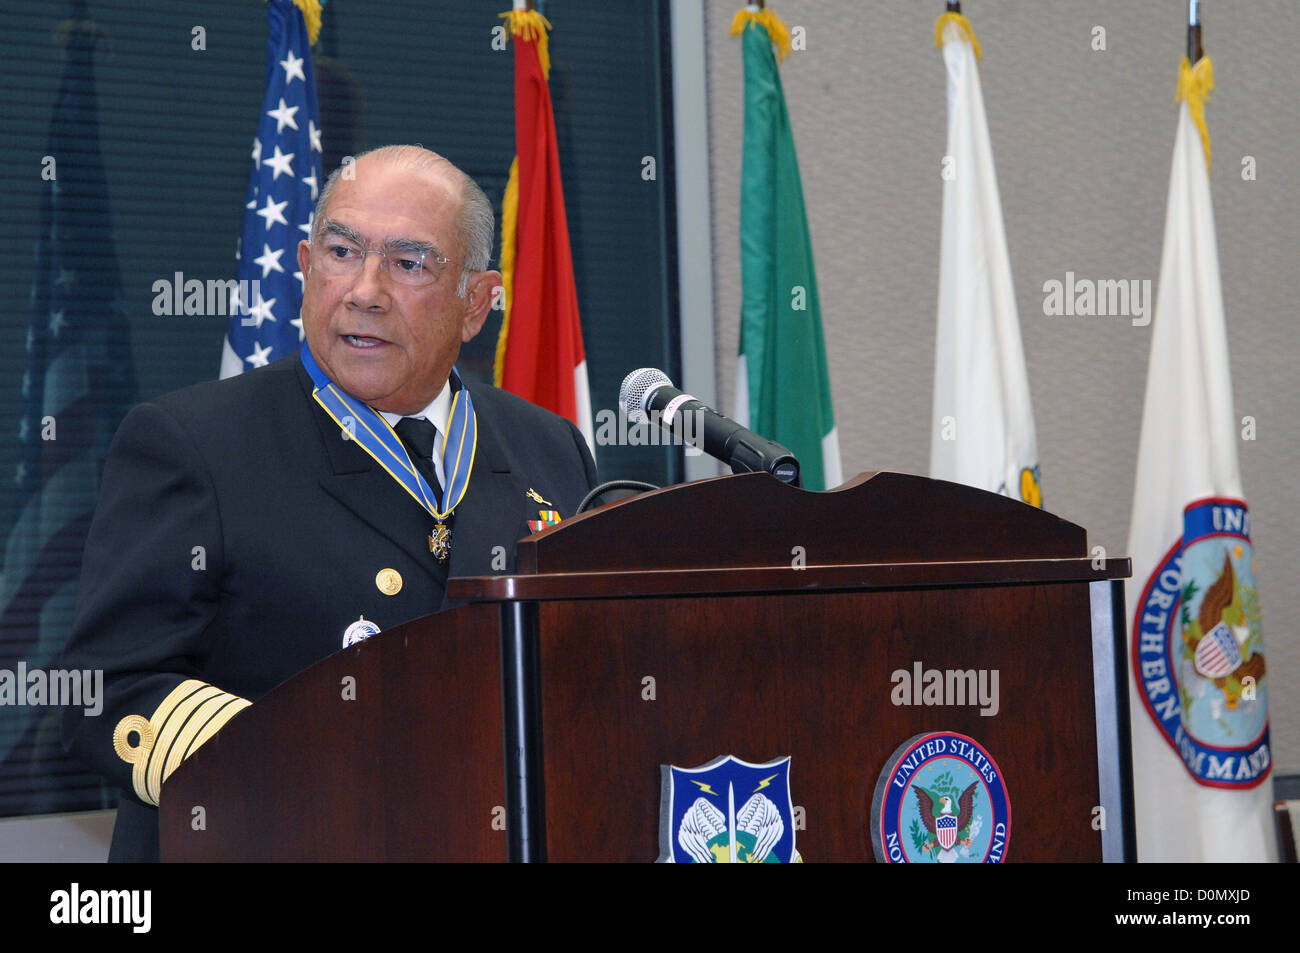 PETERSON AIR FORCE BASE, Colo. - ADM. Mariano Saynez, segretario della Marina, Messico, dà un discorso di commiato ai membri di Nora Foto Stock